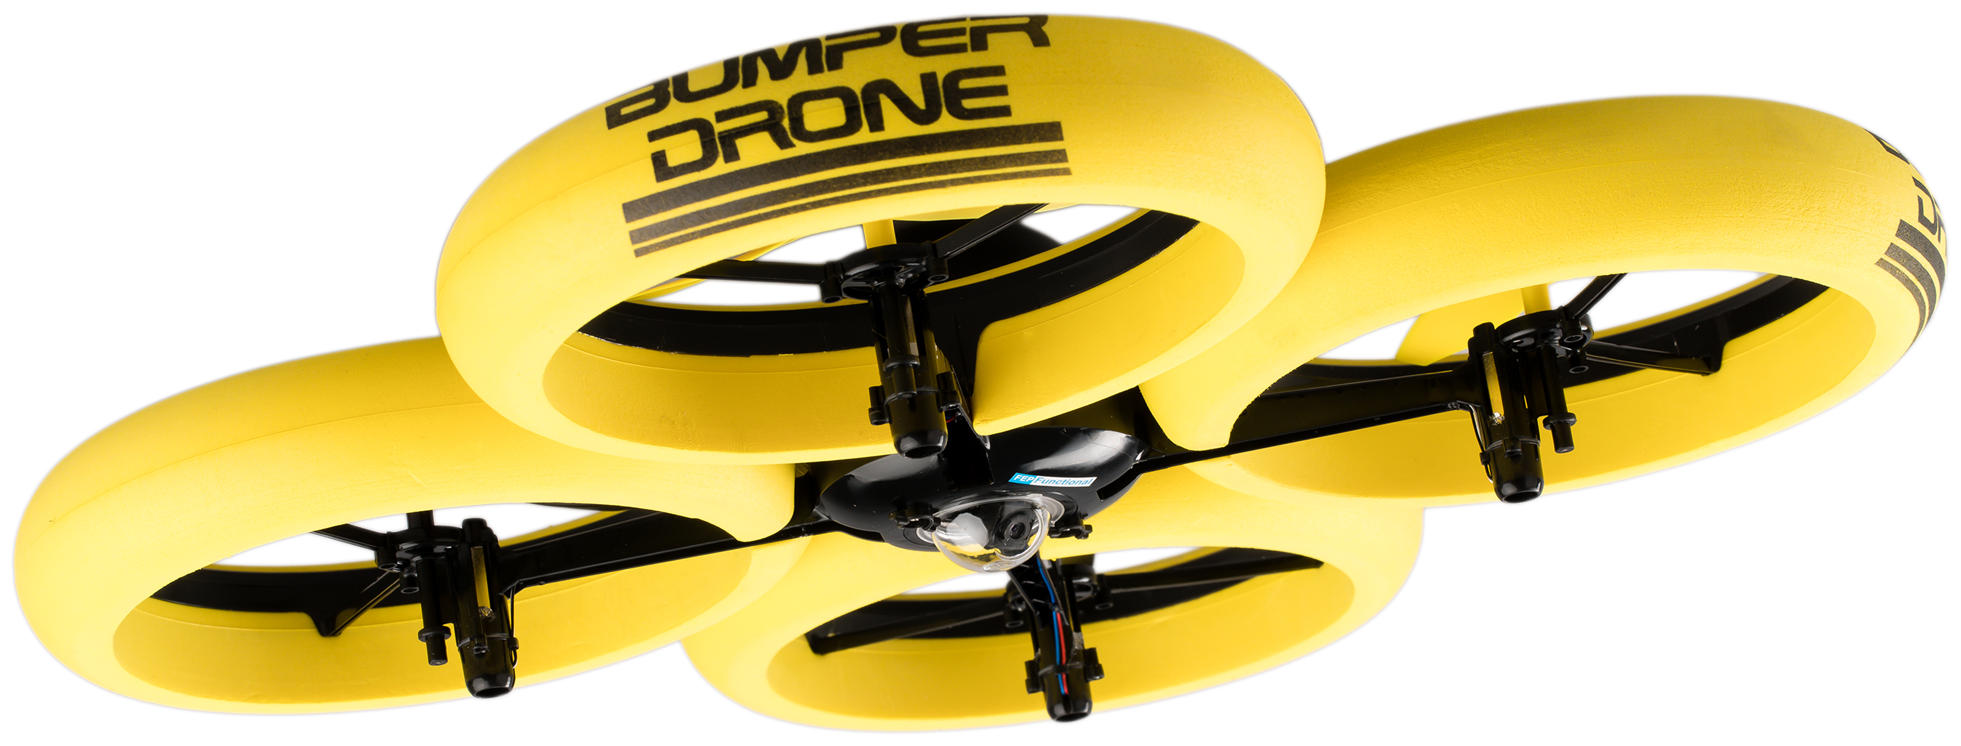 Квадрокоптер  Silverlit Bumper Drone HD, желтый